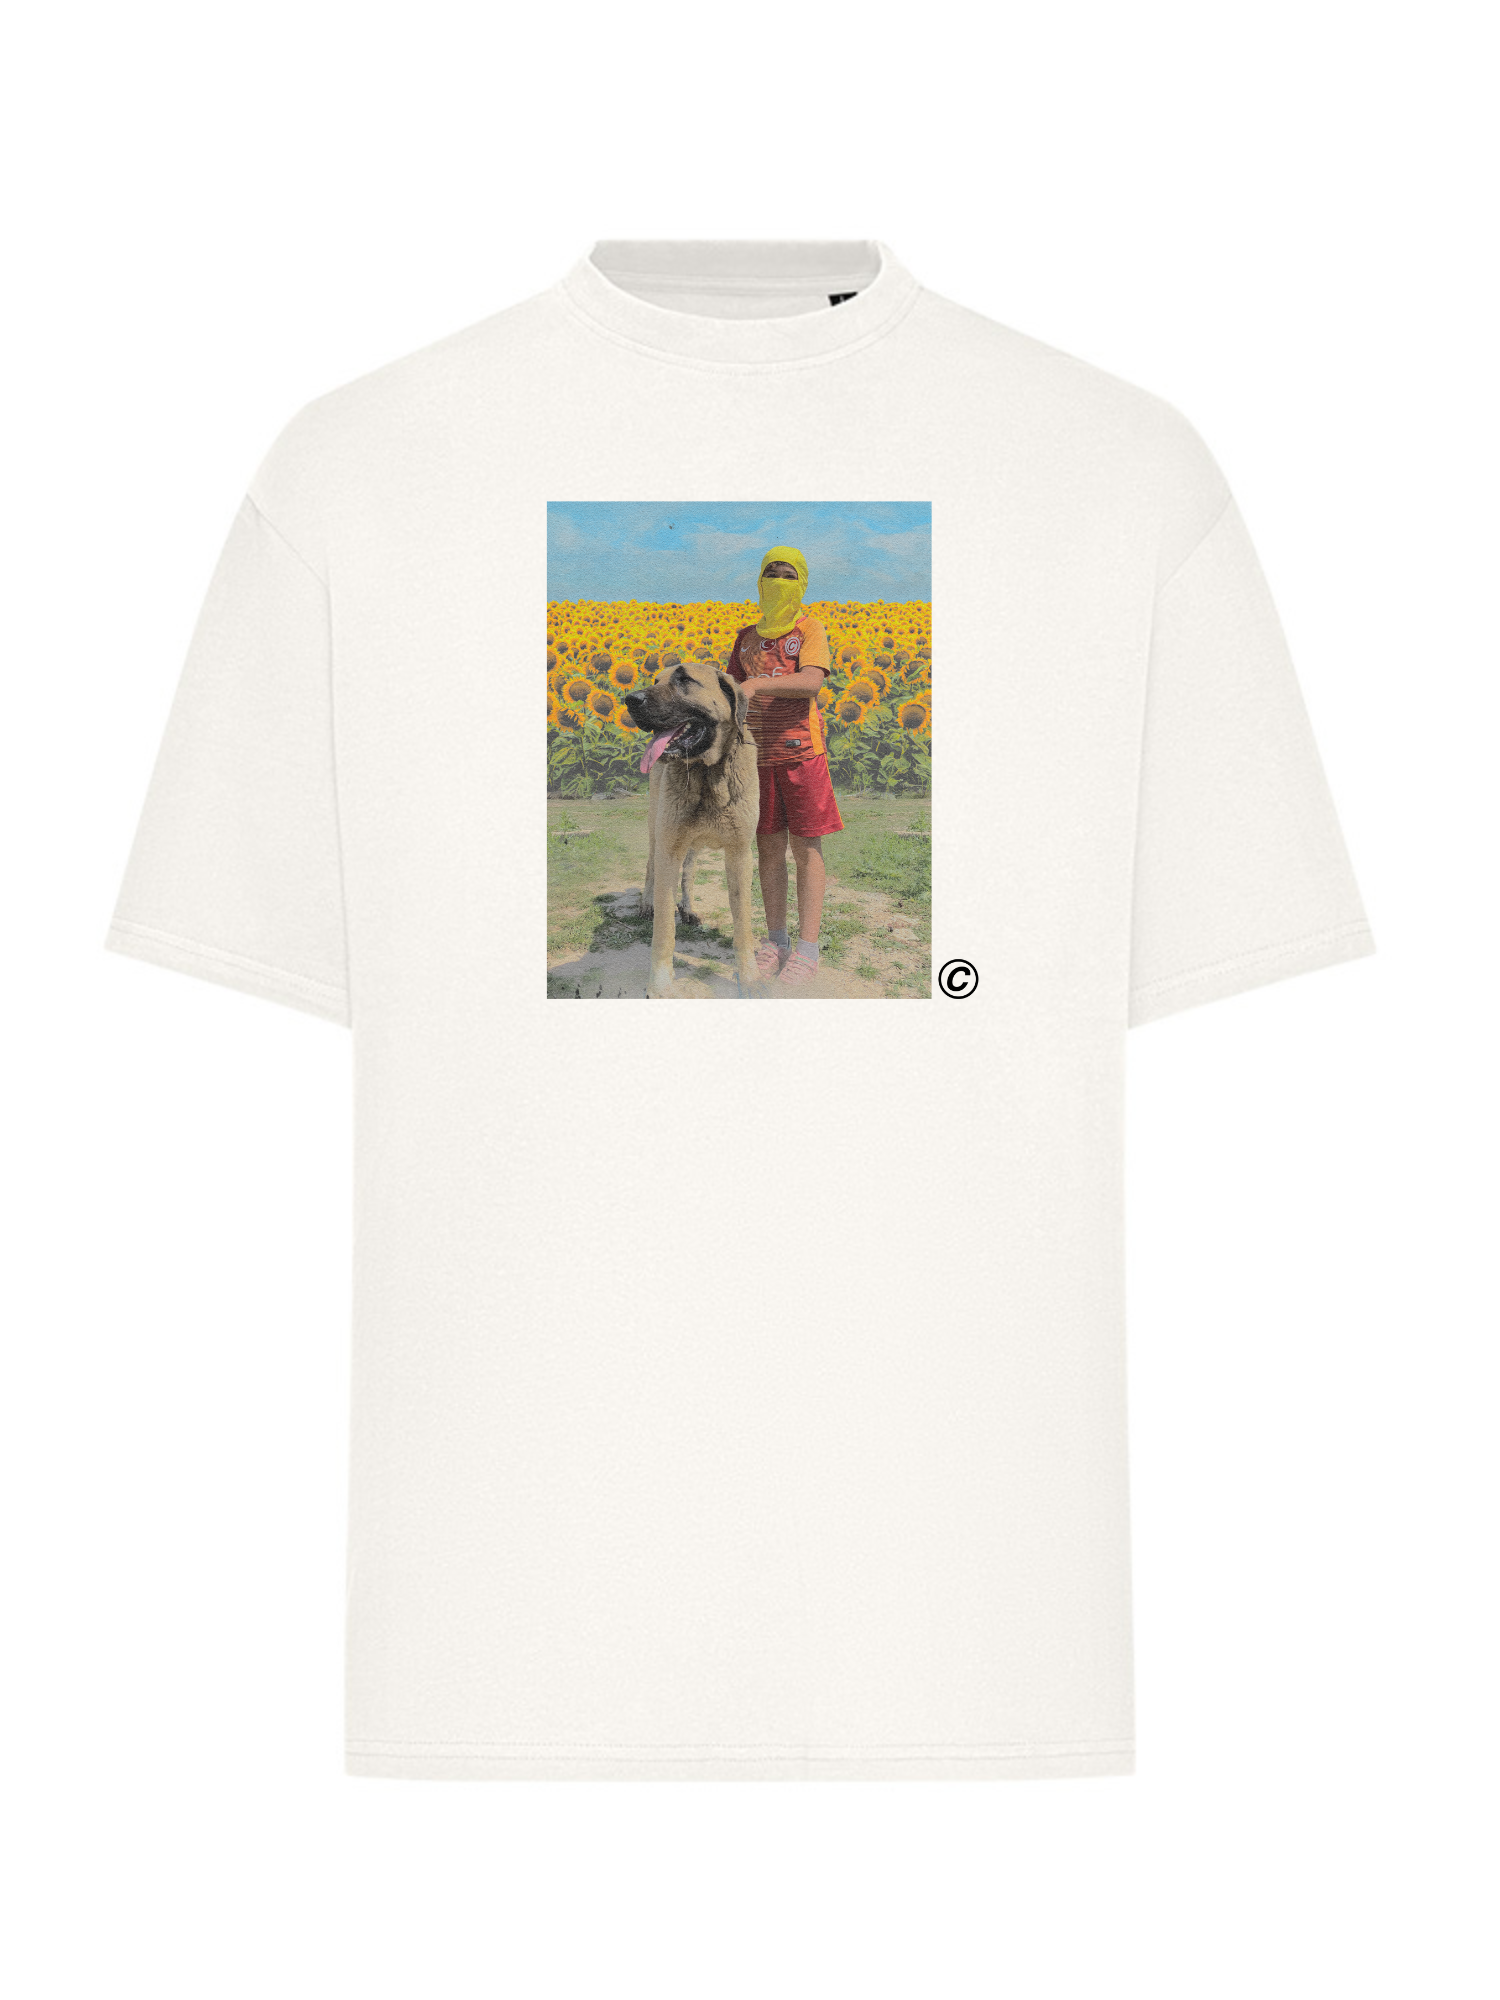 Chefket - Little Boy T-Shirt